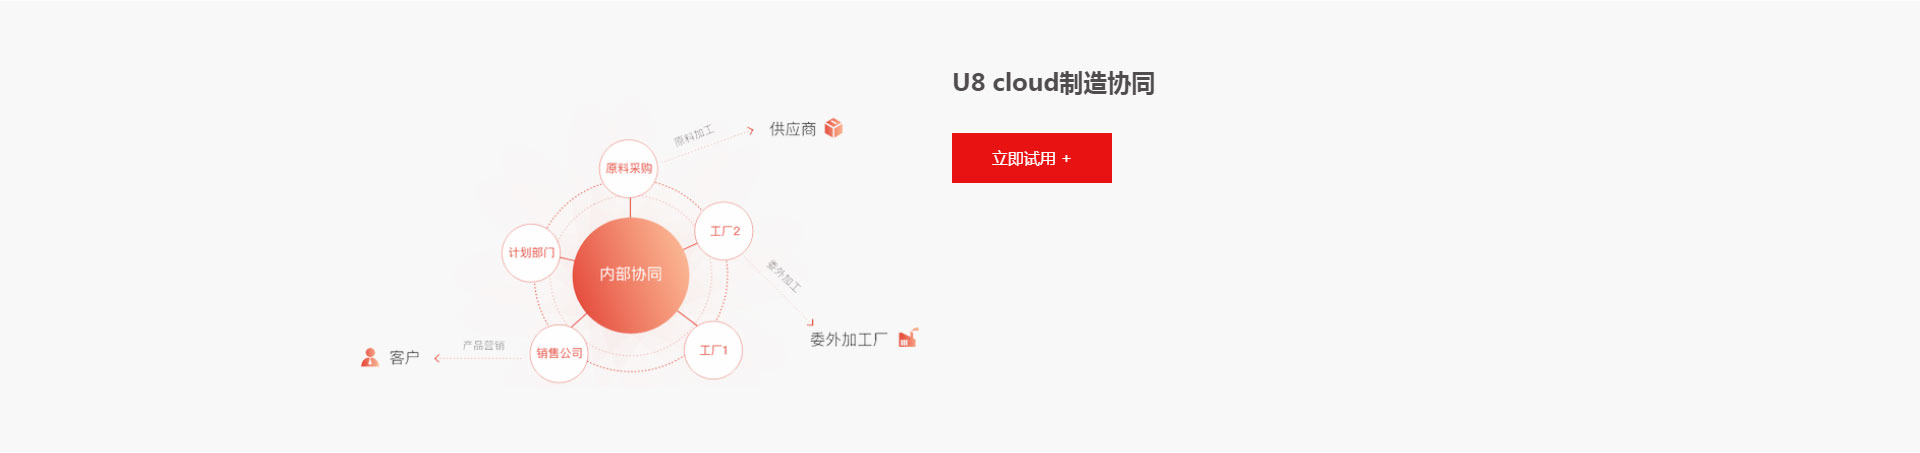 用友U8-Cloud---用友网络科技股份有限公司_07.jpg